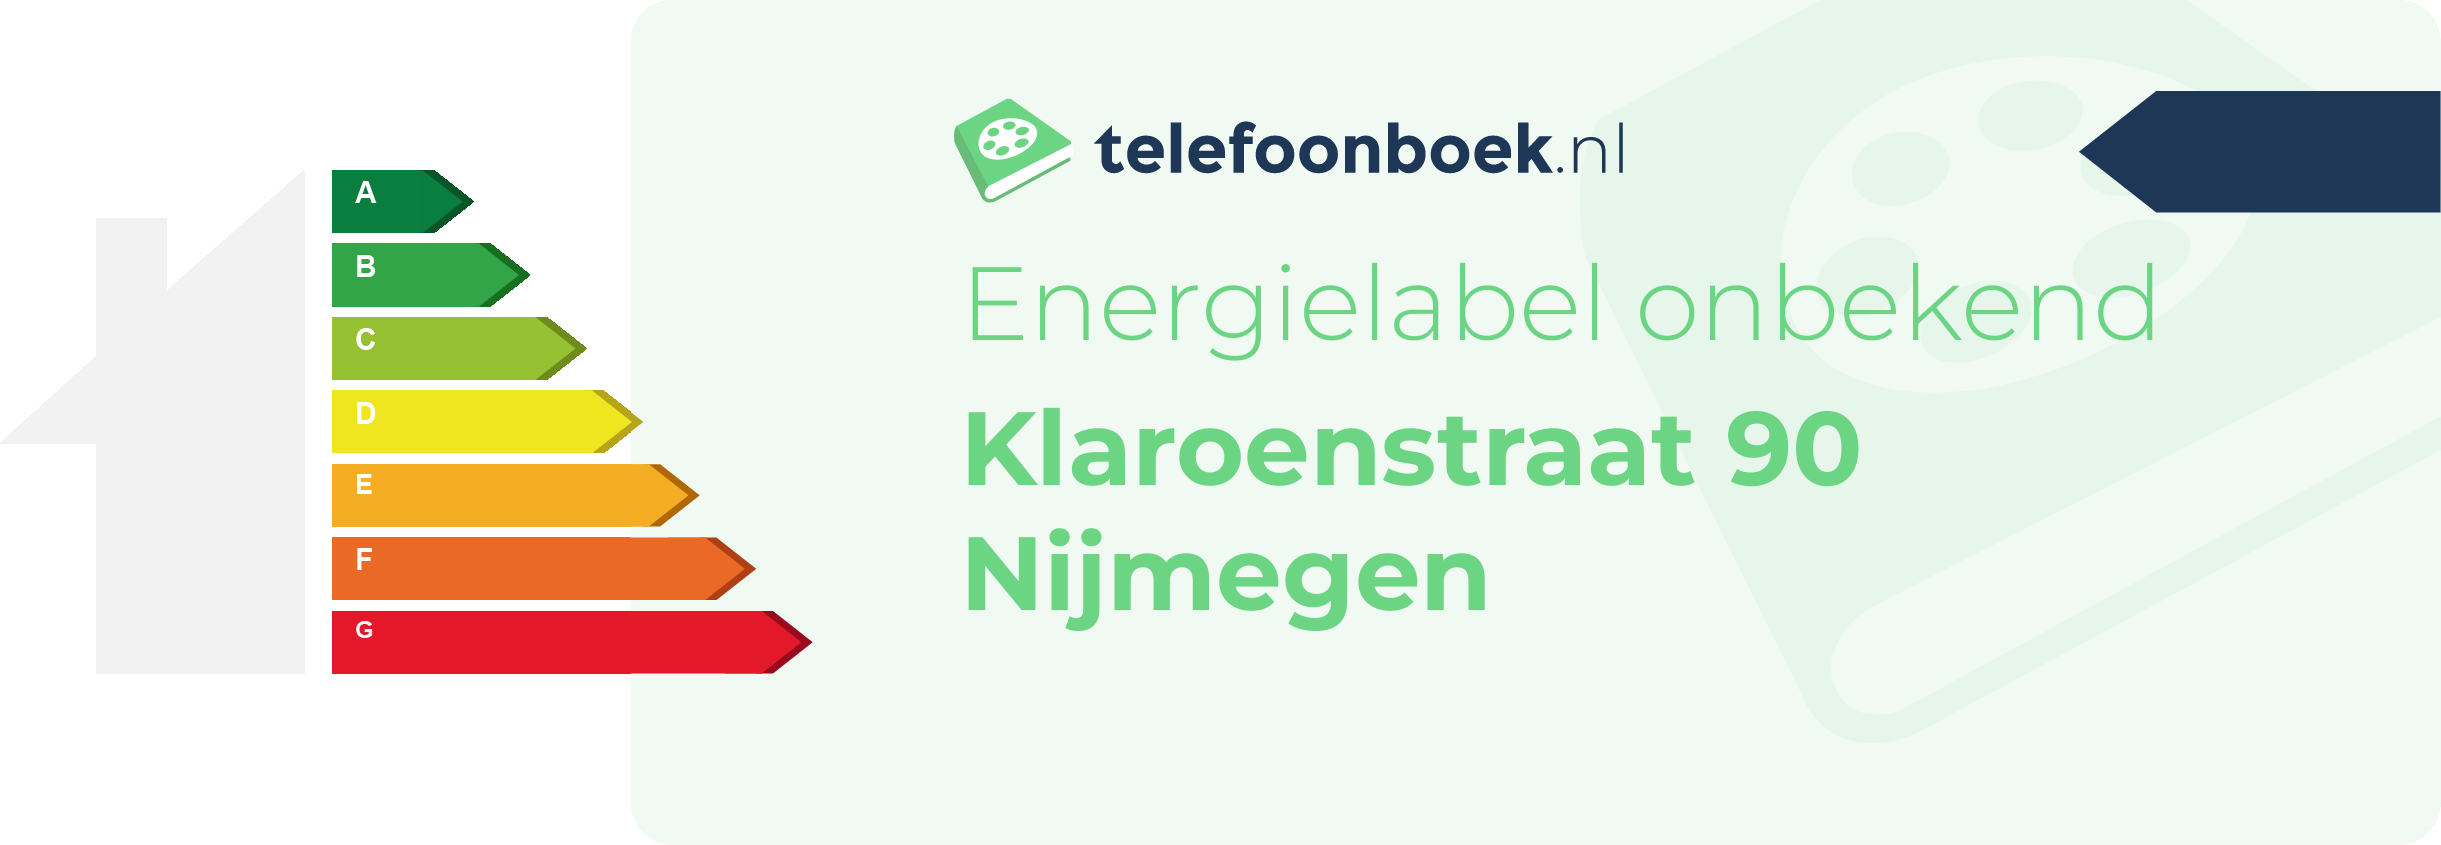 Energielabel Klaroenstraat 90 Nijmegen